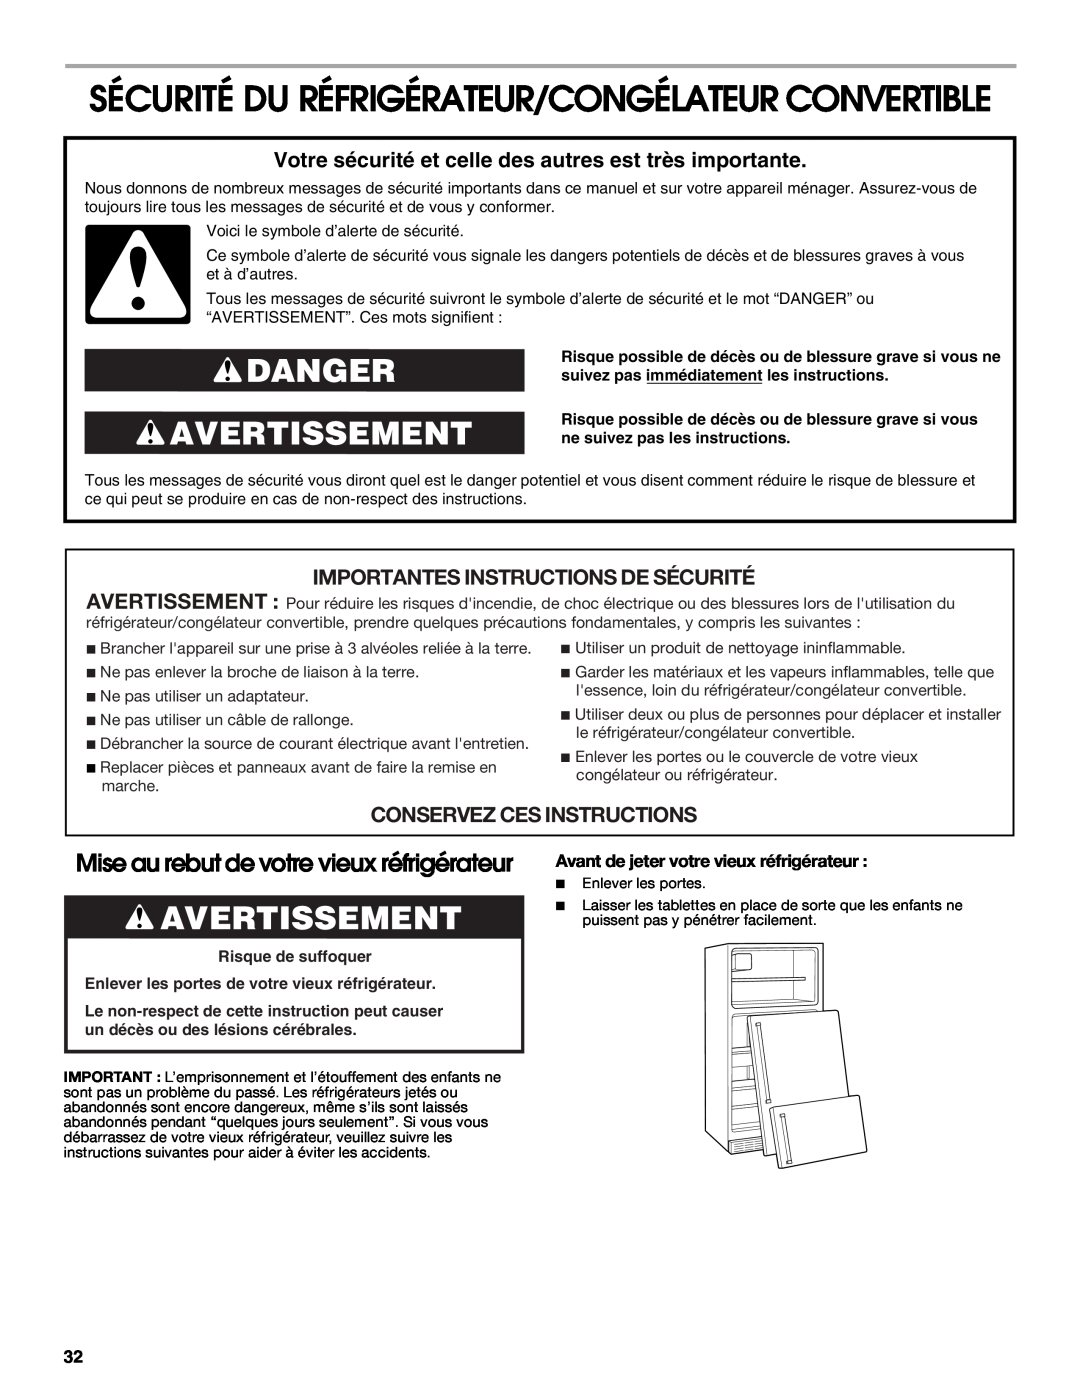 Whirlpool GAFZ21XXRK01 Sécurité Du Réfrigérateur/Congélateur Convertible, Danger Avertissement, Conservez Ces Instructions 